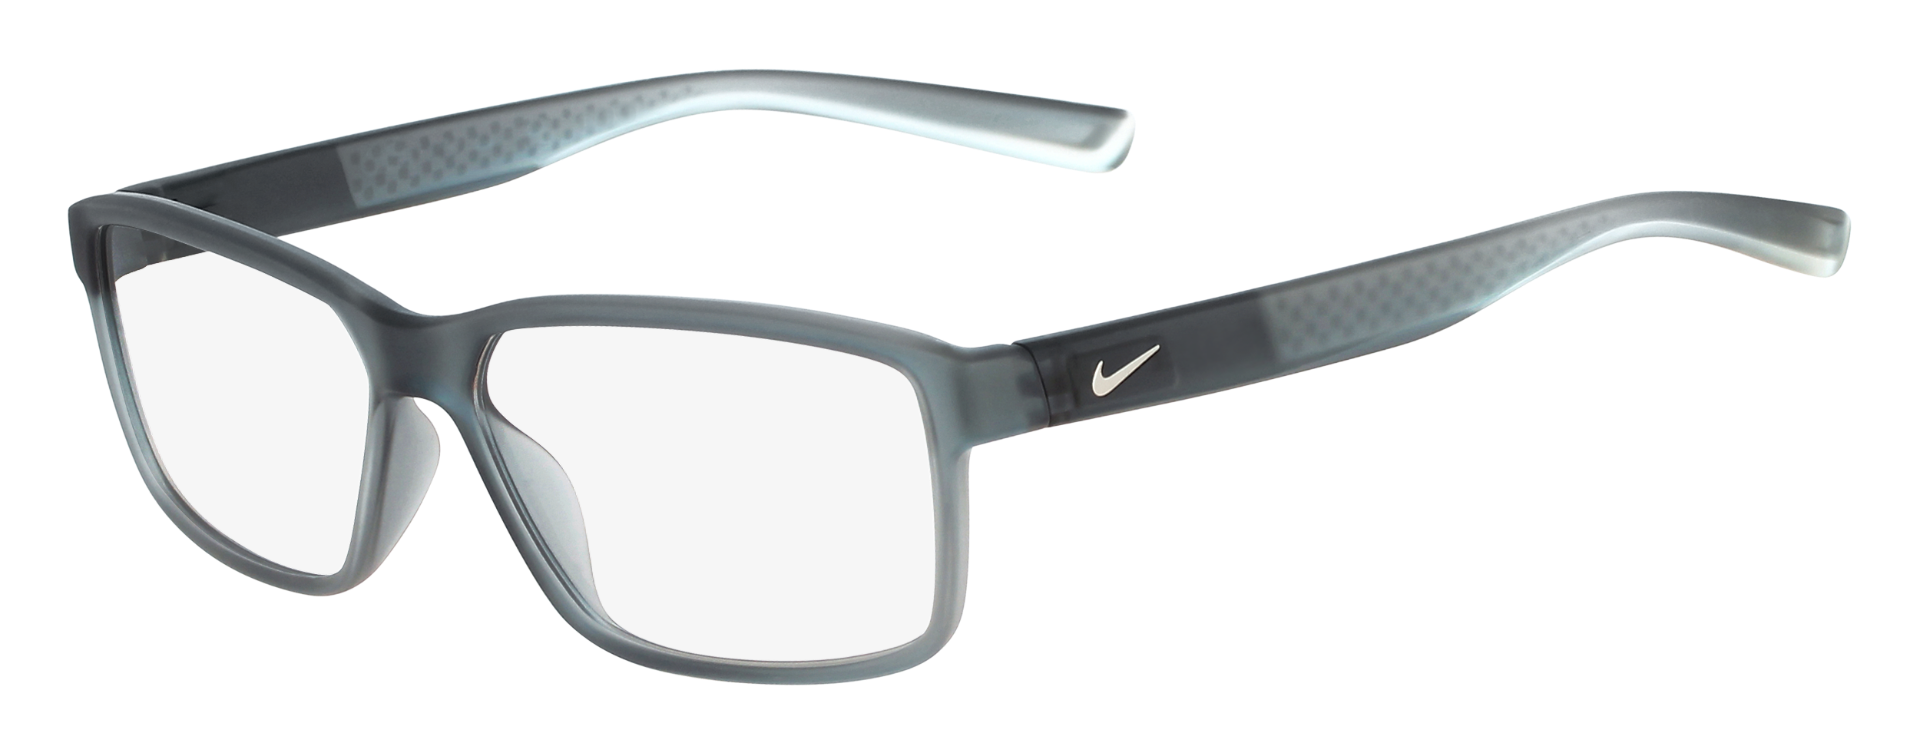 Nike eyeglasses the 7092 frame. Full-rim frame in gray with rectangular clear lenses.